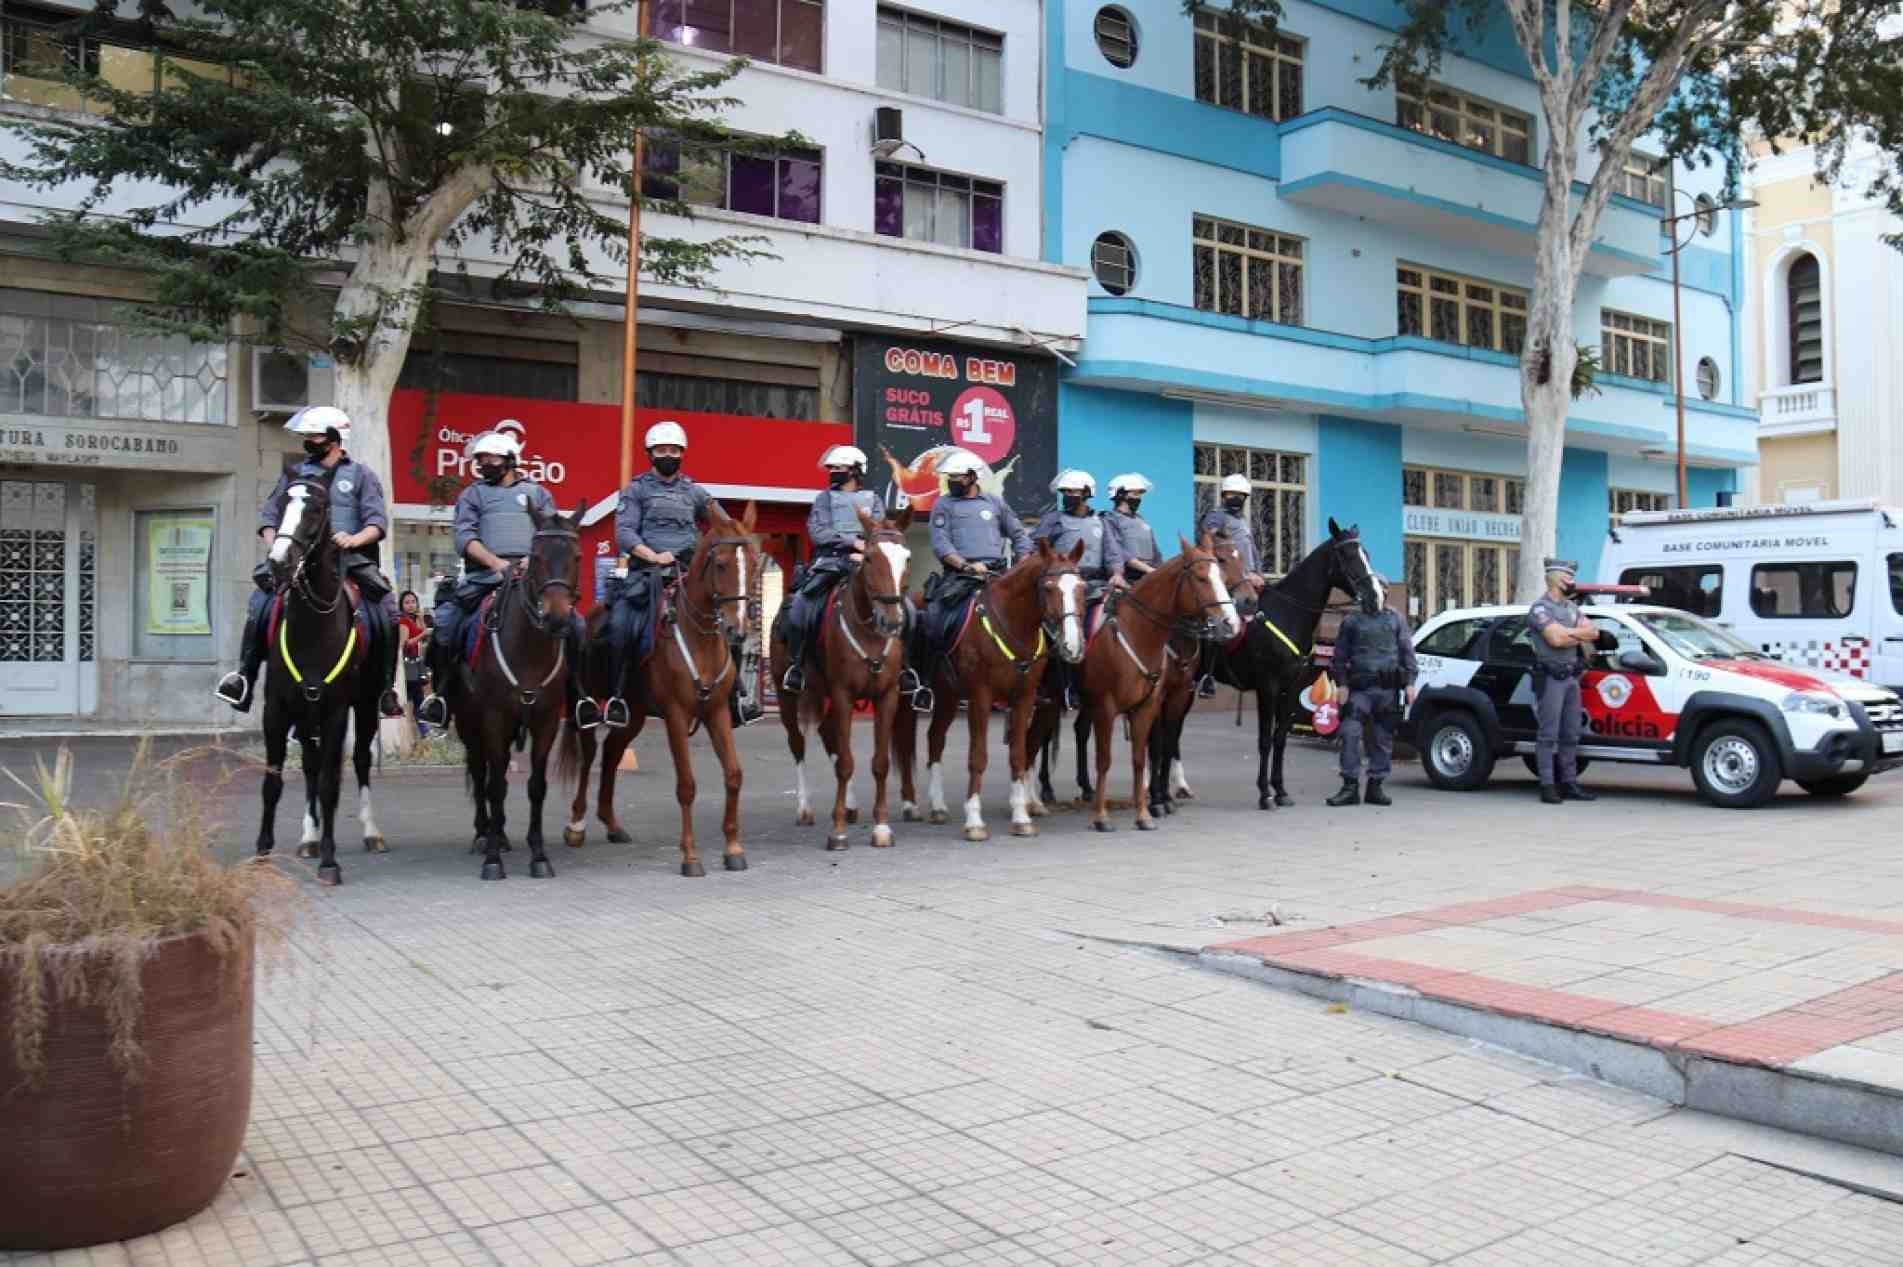 Programa reúne todas as forças policiais da cidade para a segurança do centro